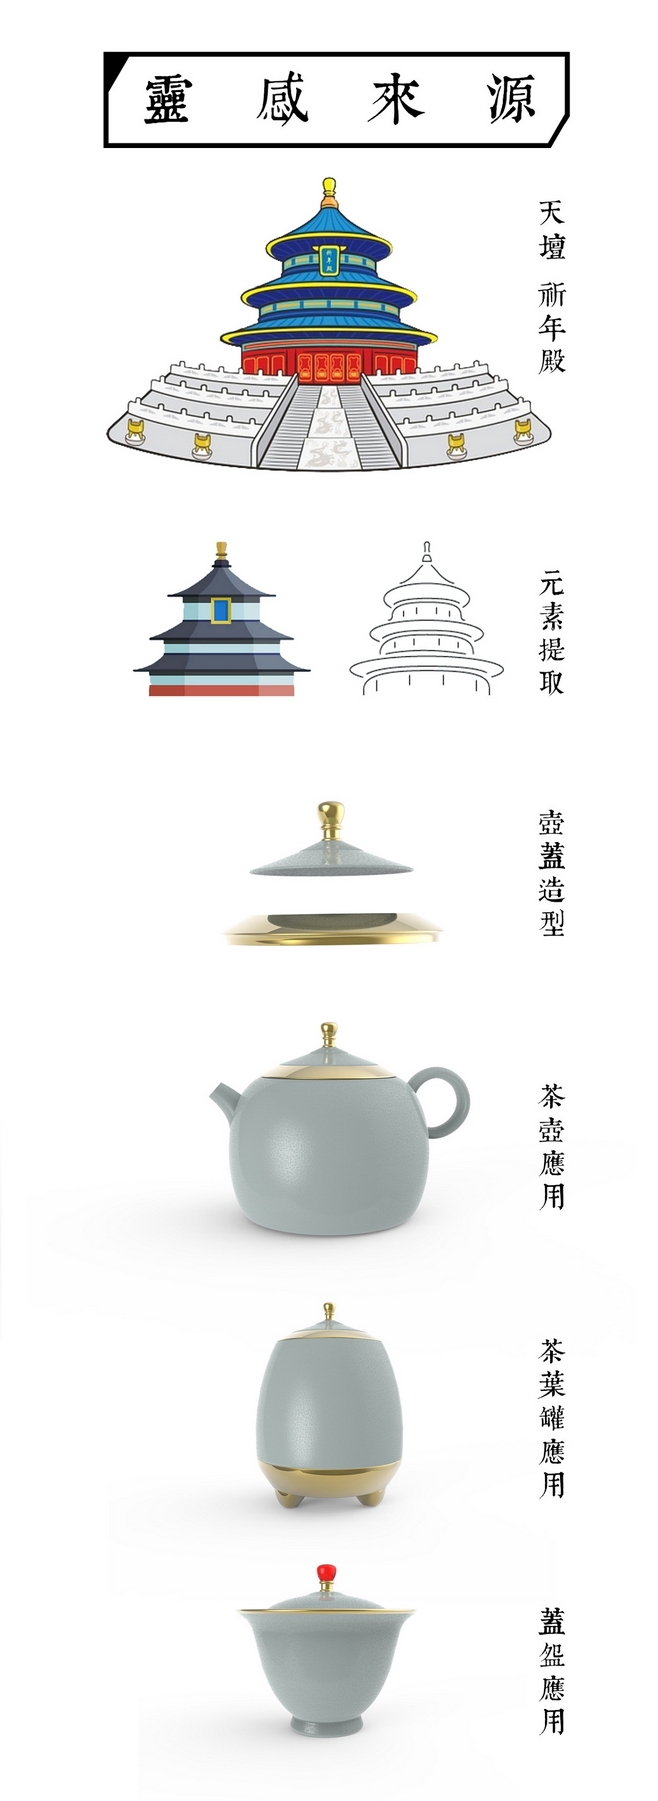 创意汝瓷茶具设计——优秀工业设计产品推荐